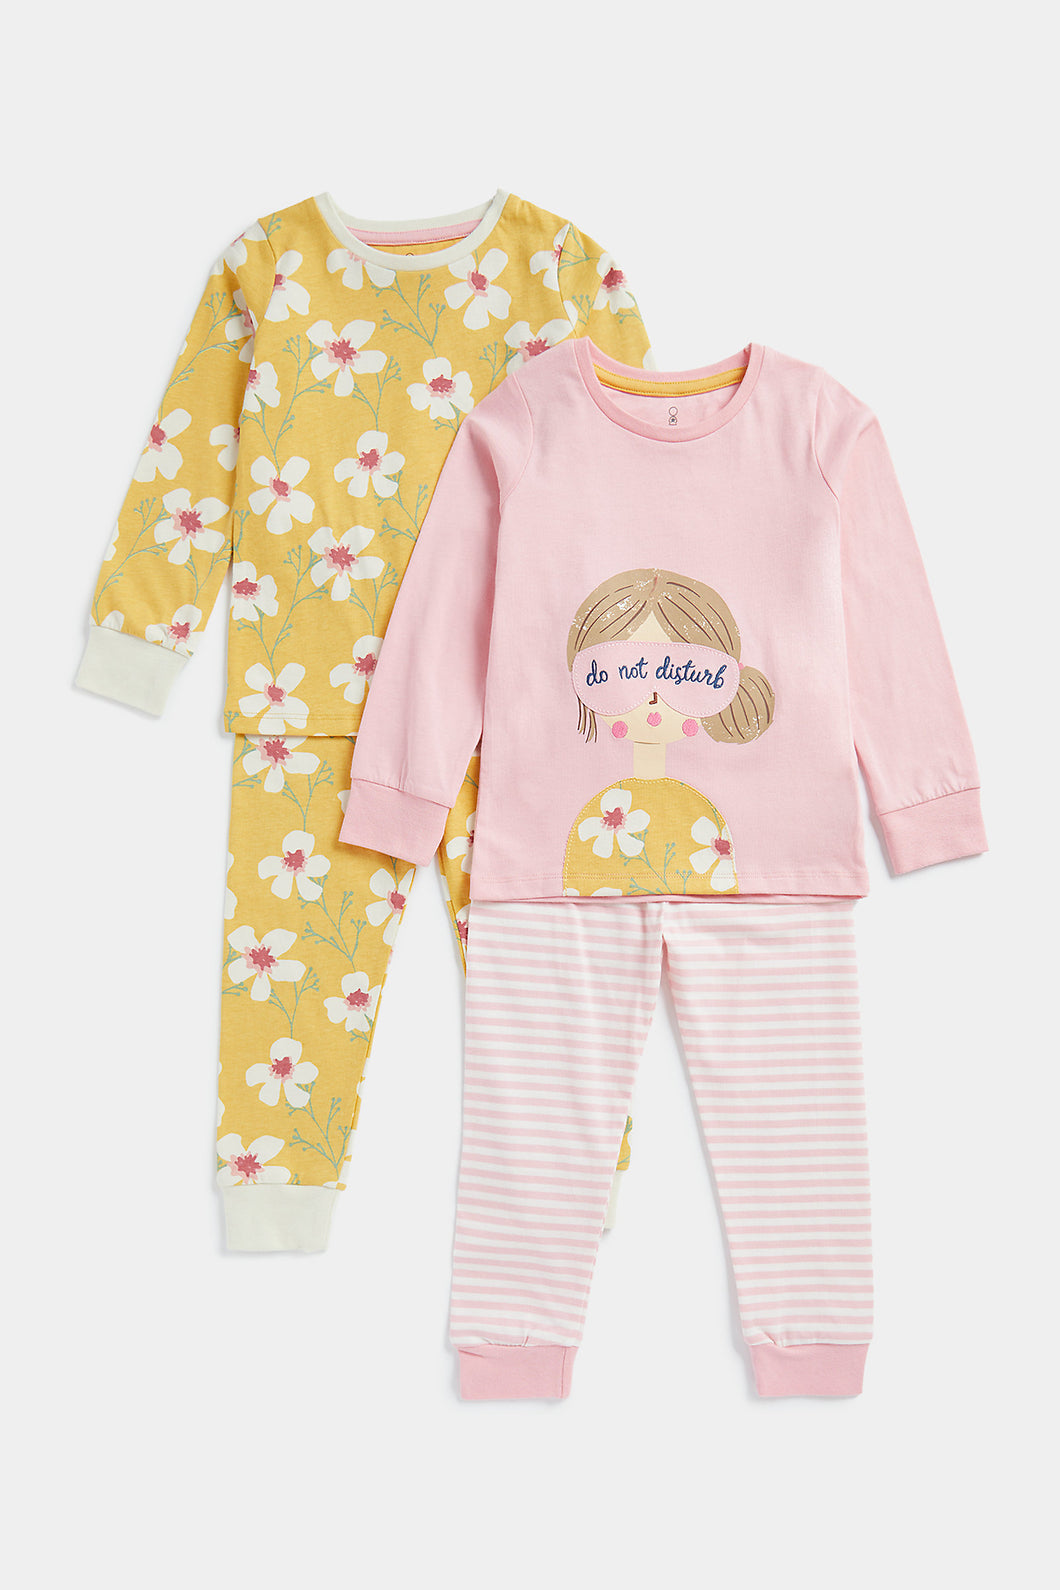 Mothercare Do Not Disturb Pyjamas - 2 Pack